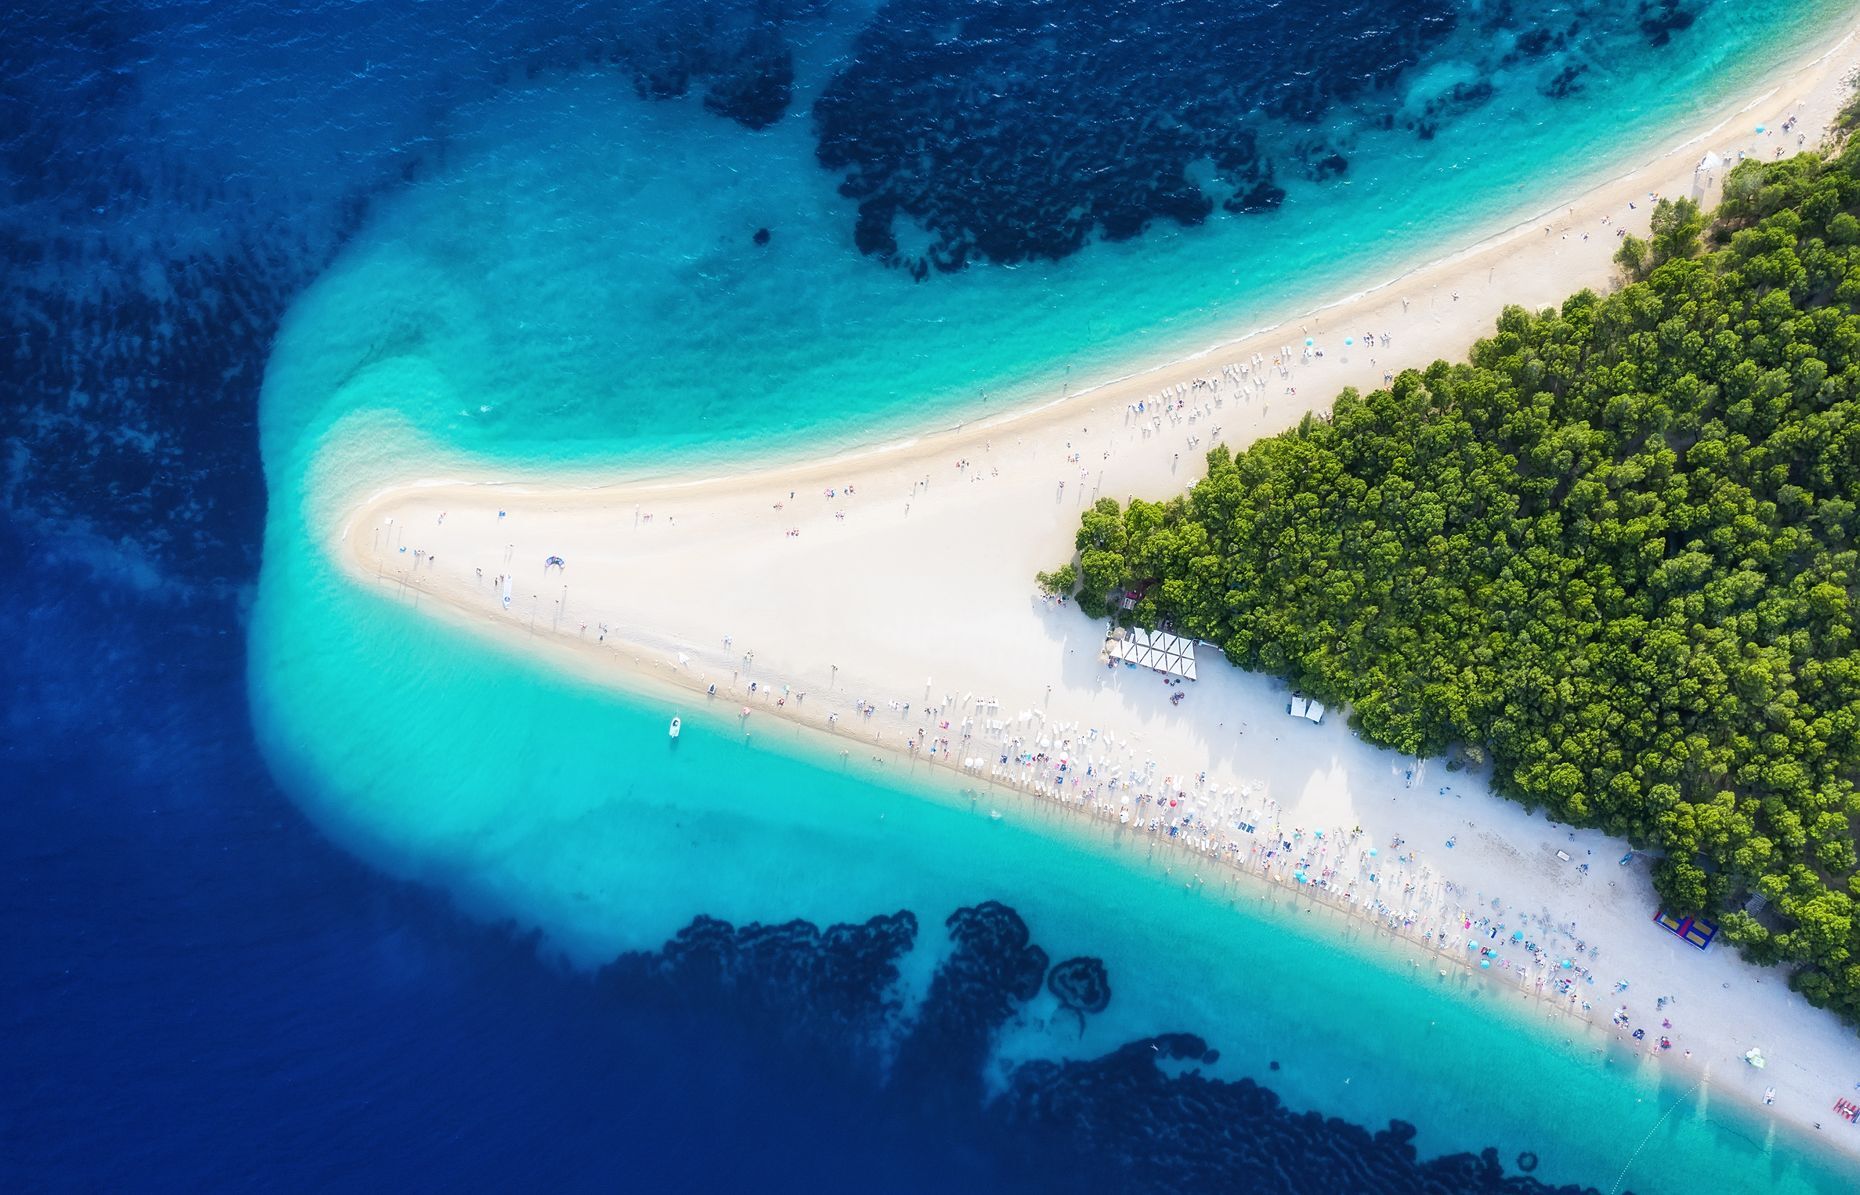 <p>Pour vous prélasser sur le sable doré de Zlatni Rat, une des plus belles plages du monde, vous devrez vous rendre sur <a href="https://www.visitbrac.com/">l’île de Brac</a> en Croatie. Offrant une vue renversante sur la mer Adriatique, la «Corne d’or» attire de nombreux amateurs de planche à voile, de surf et de baignade chaque année. Vous trouverez également de nombreux magnifiques villages de pêcheurs sur l’île tout comme des vestiges romains ainsi que la jolie ville de Milna.</p>